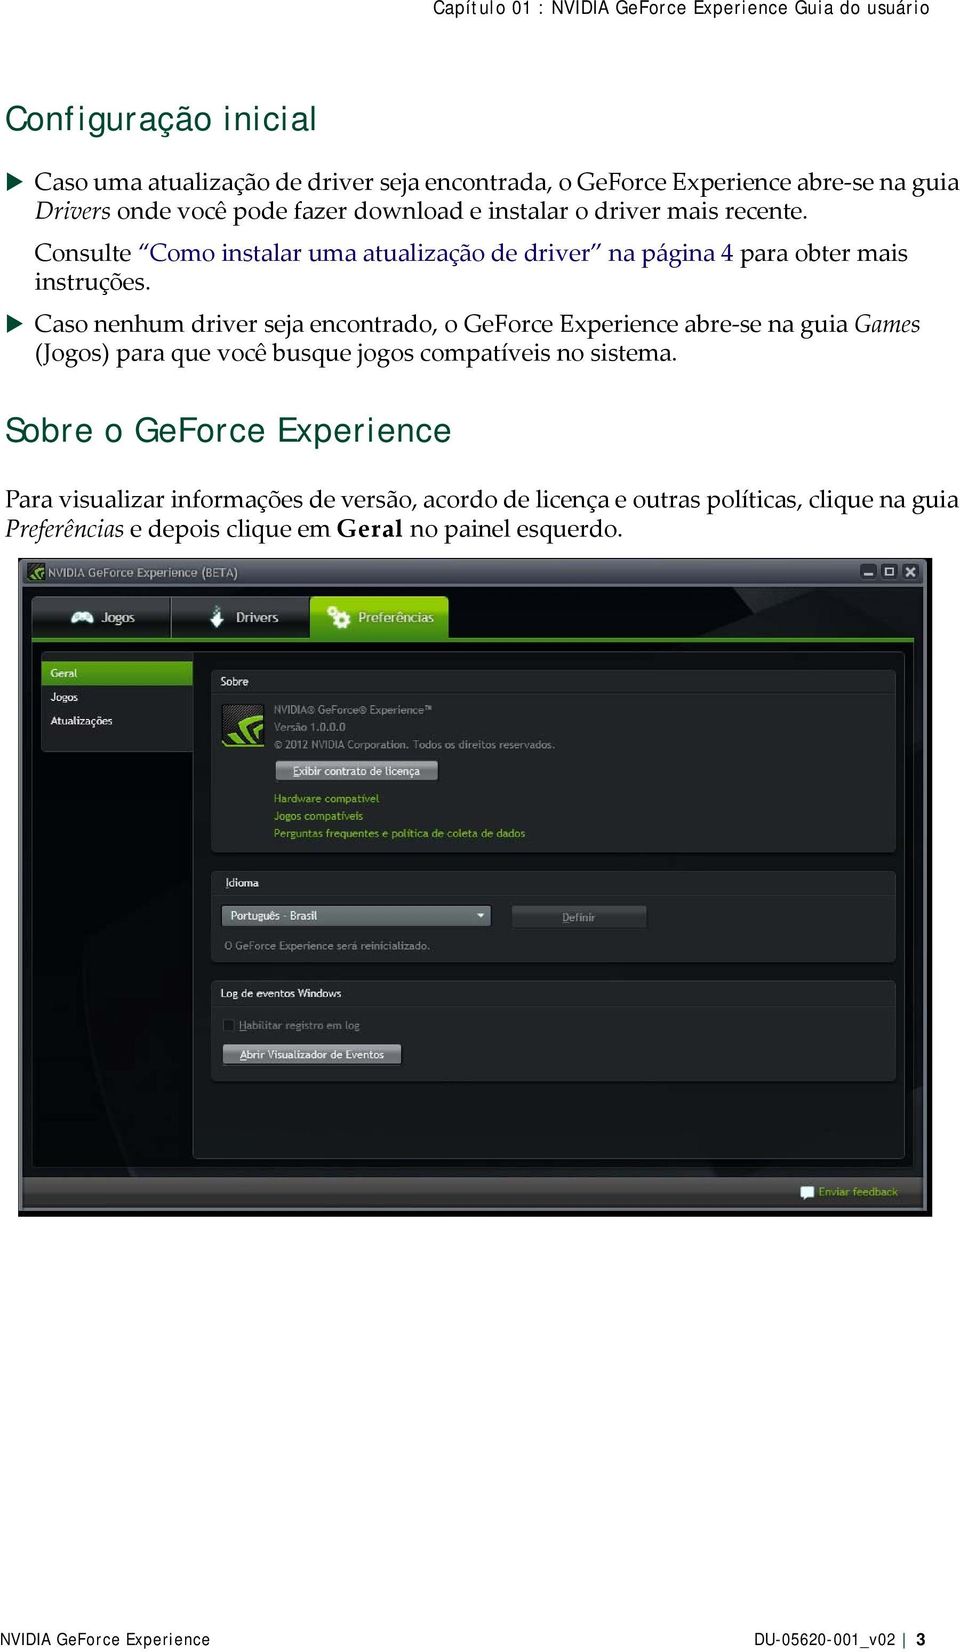 Caso nenhum driver seja encontrado, o GeForce Experience abre-se na guia Games (Jogos) para que você busque jogos compatíveis no sistema.